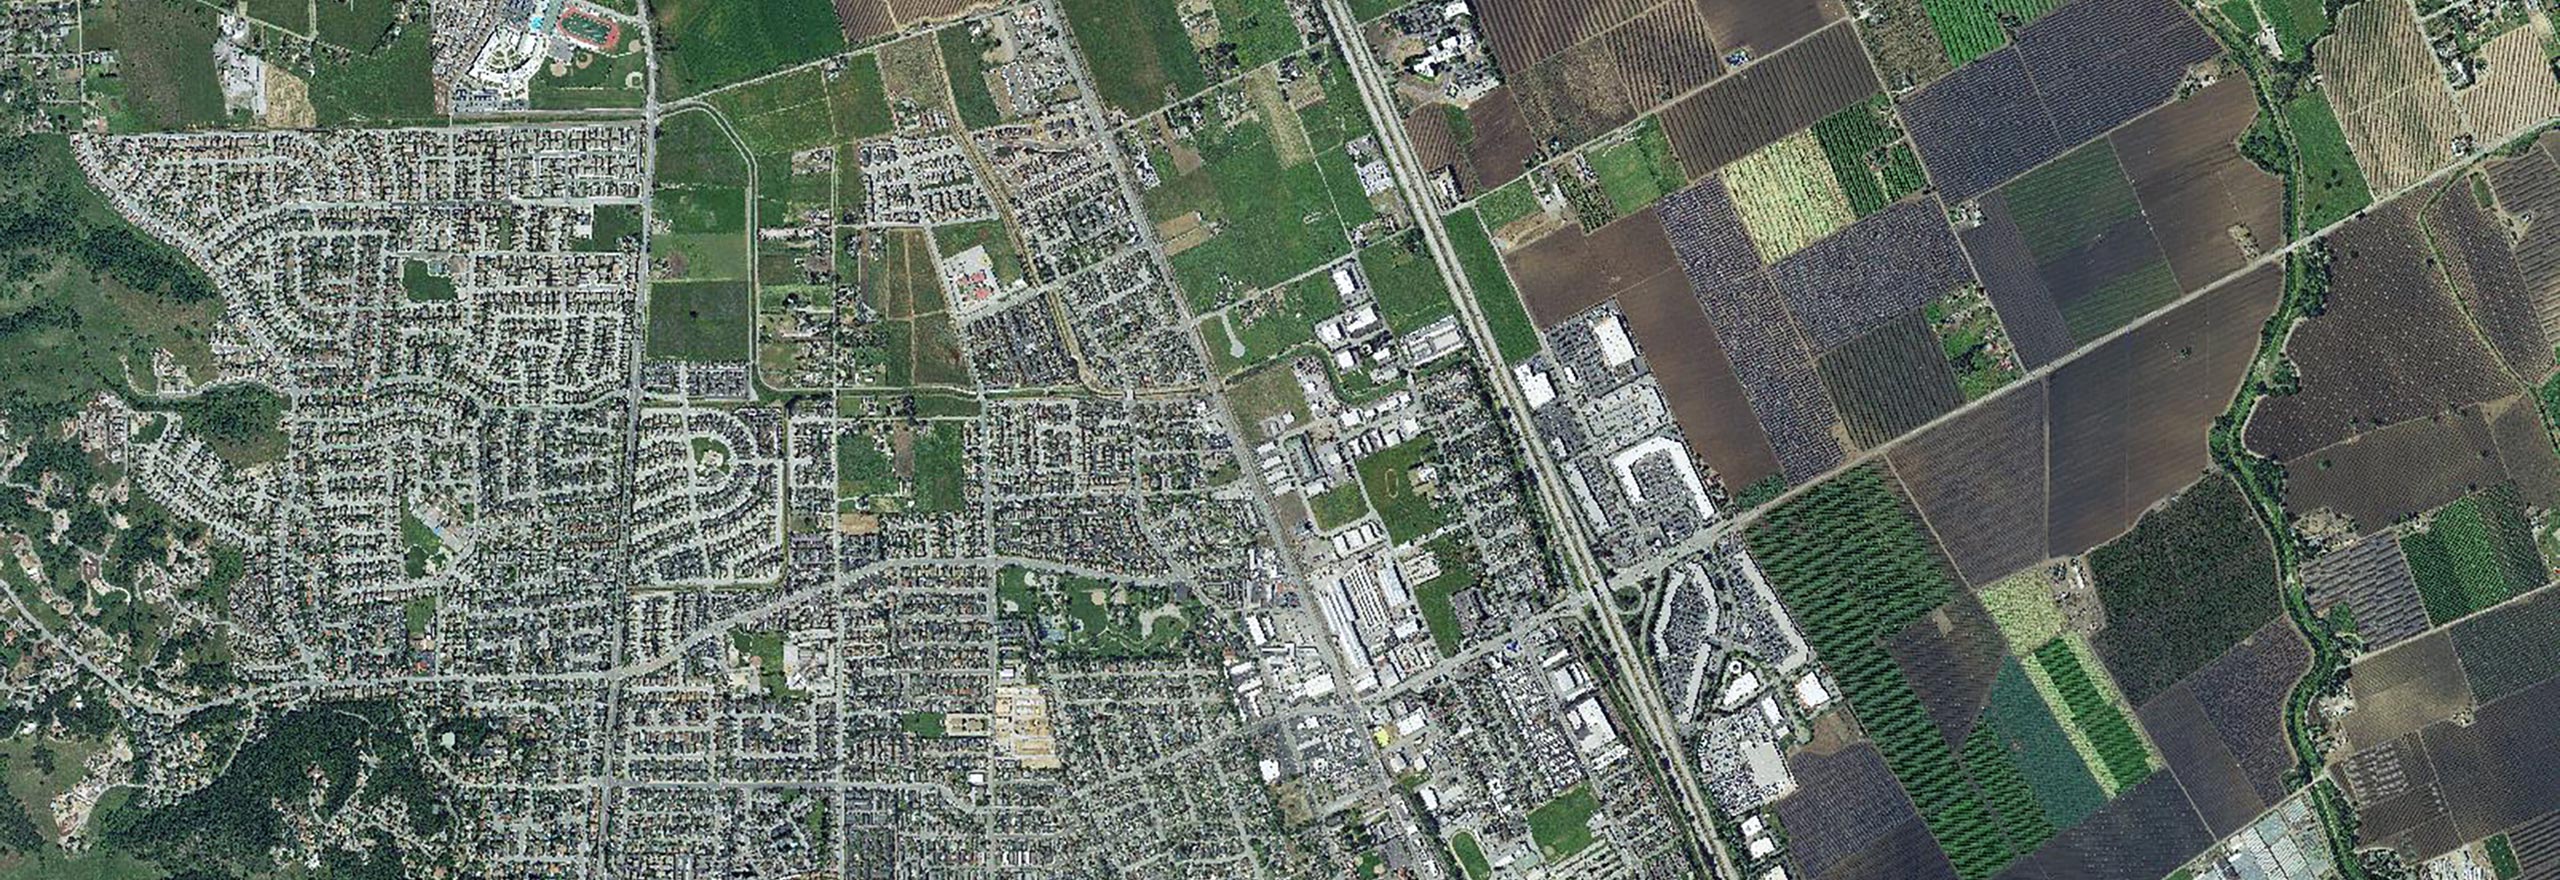 Vista de satélite de área suburbana com terra agrícola próxima